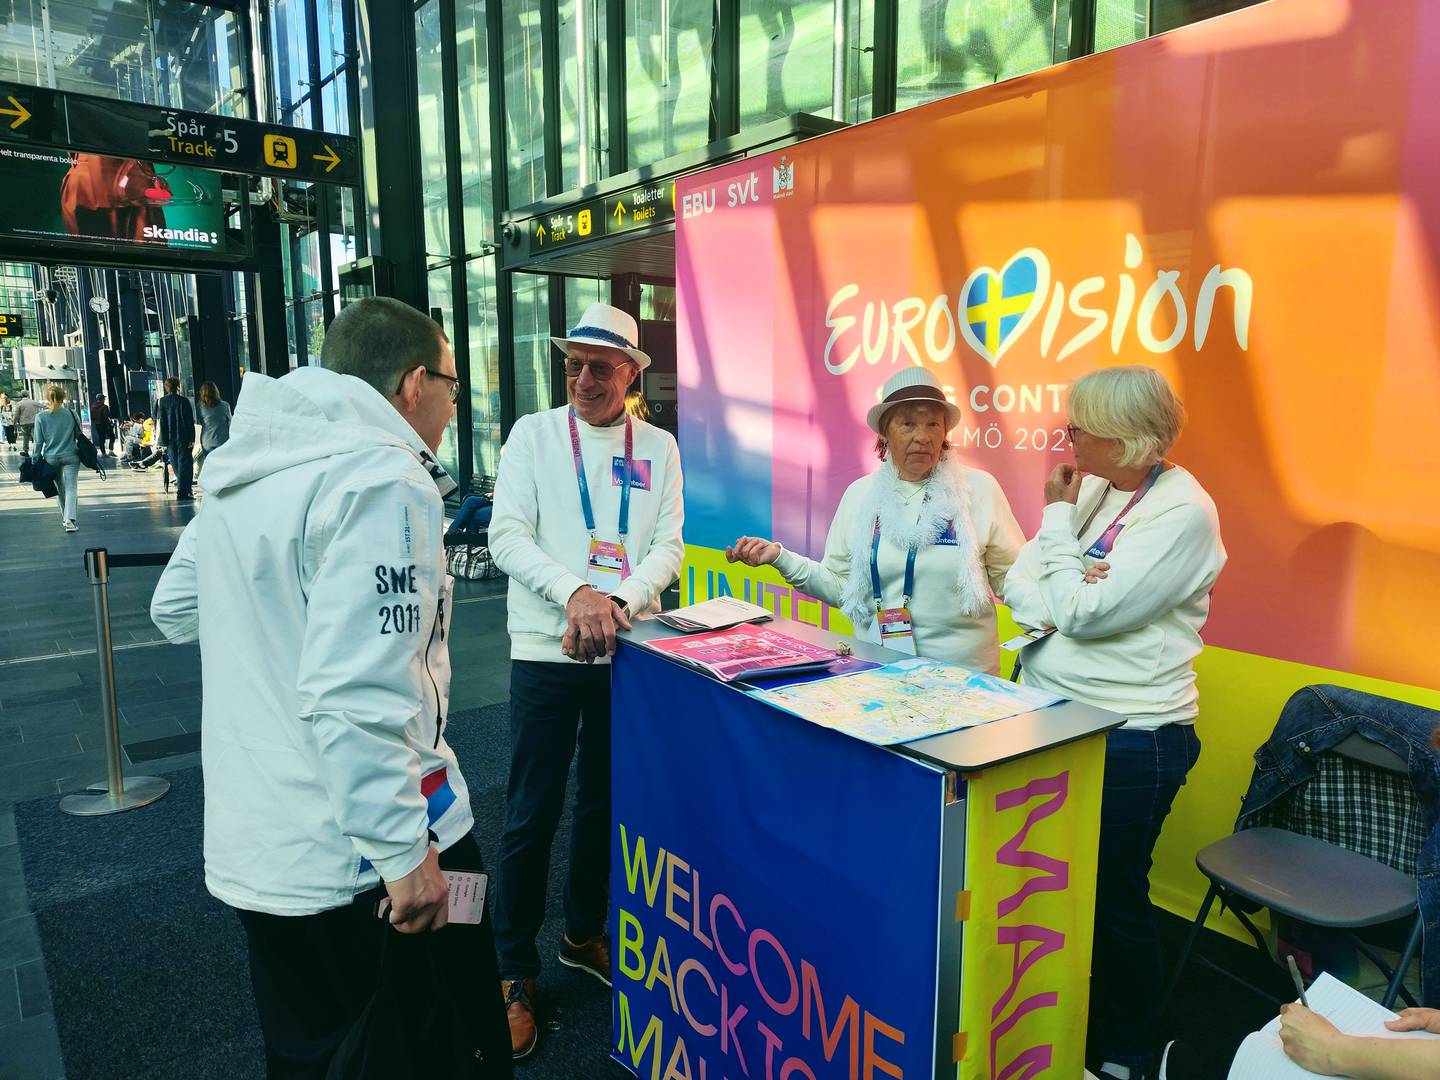 En rekke frivillige er på plass i Malmö for å hjelpe tilreisende til årets Eurovision.